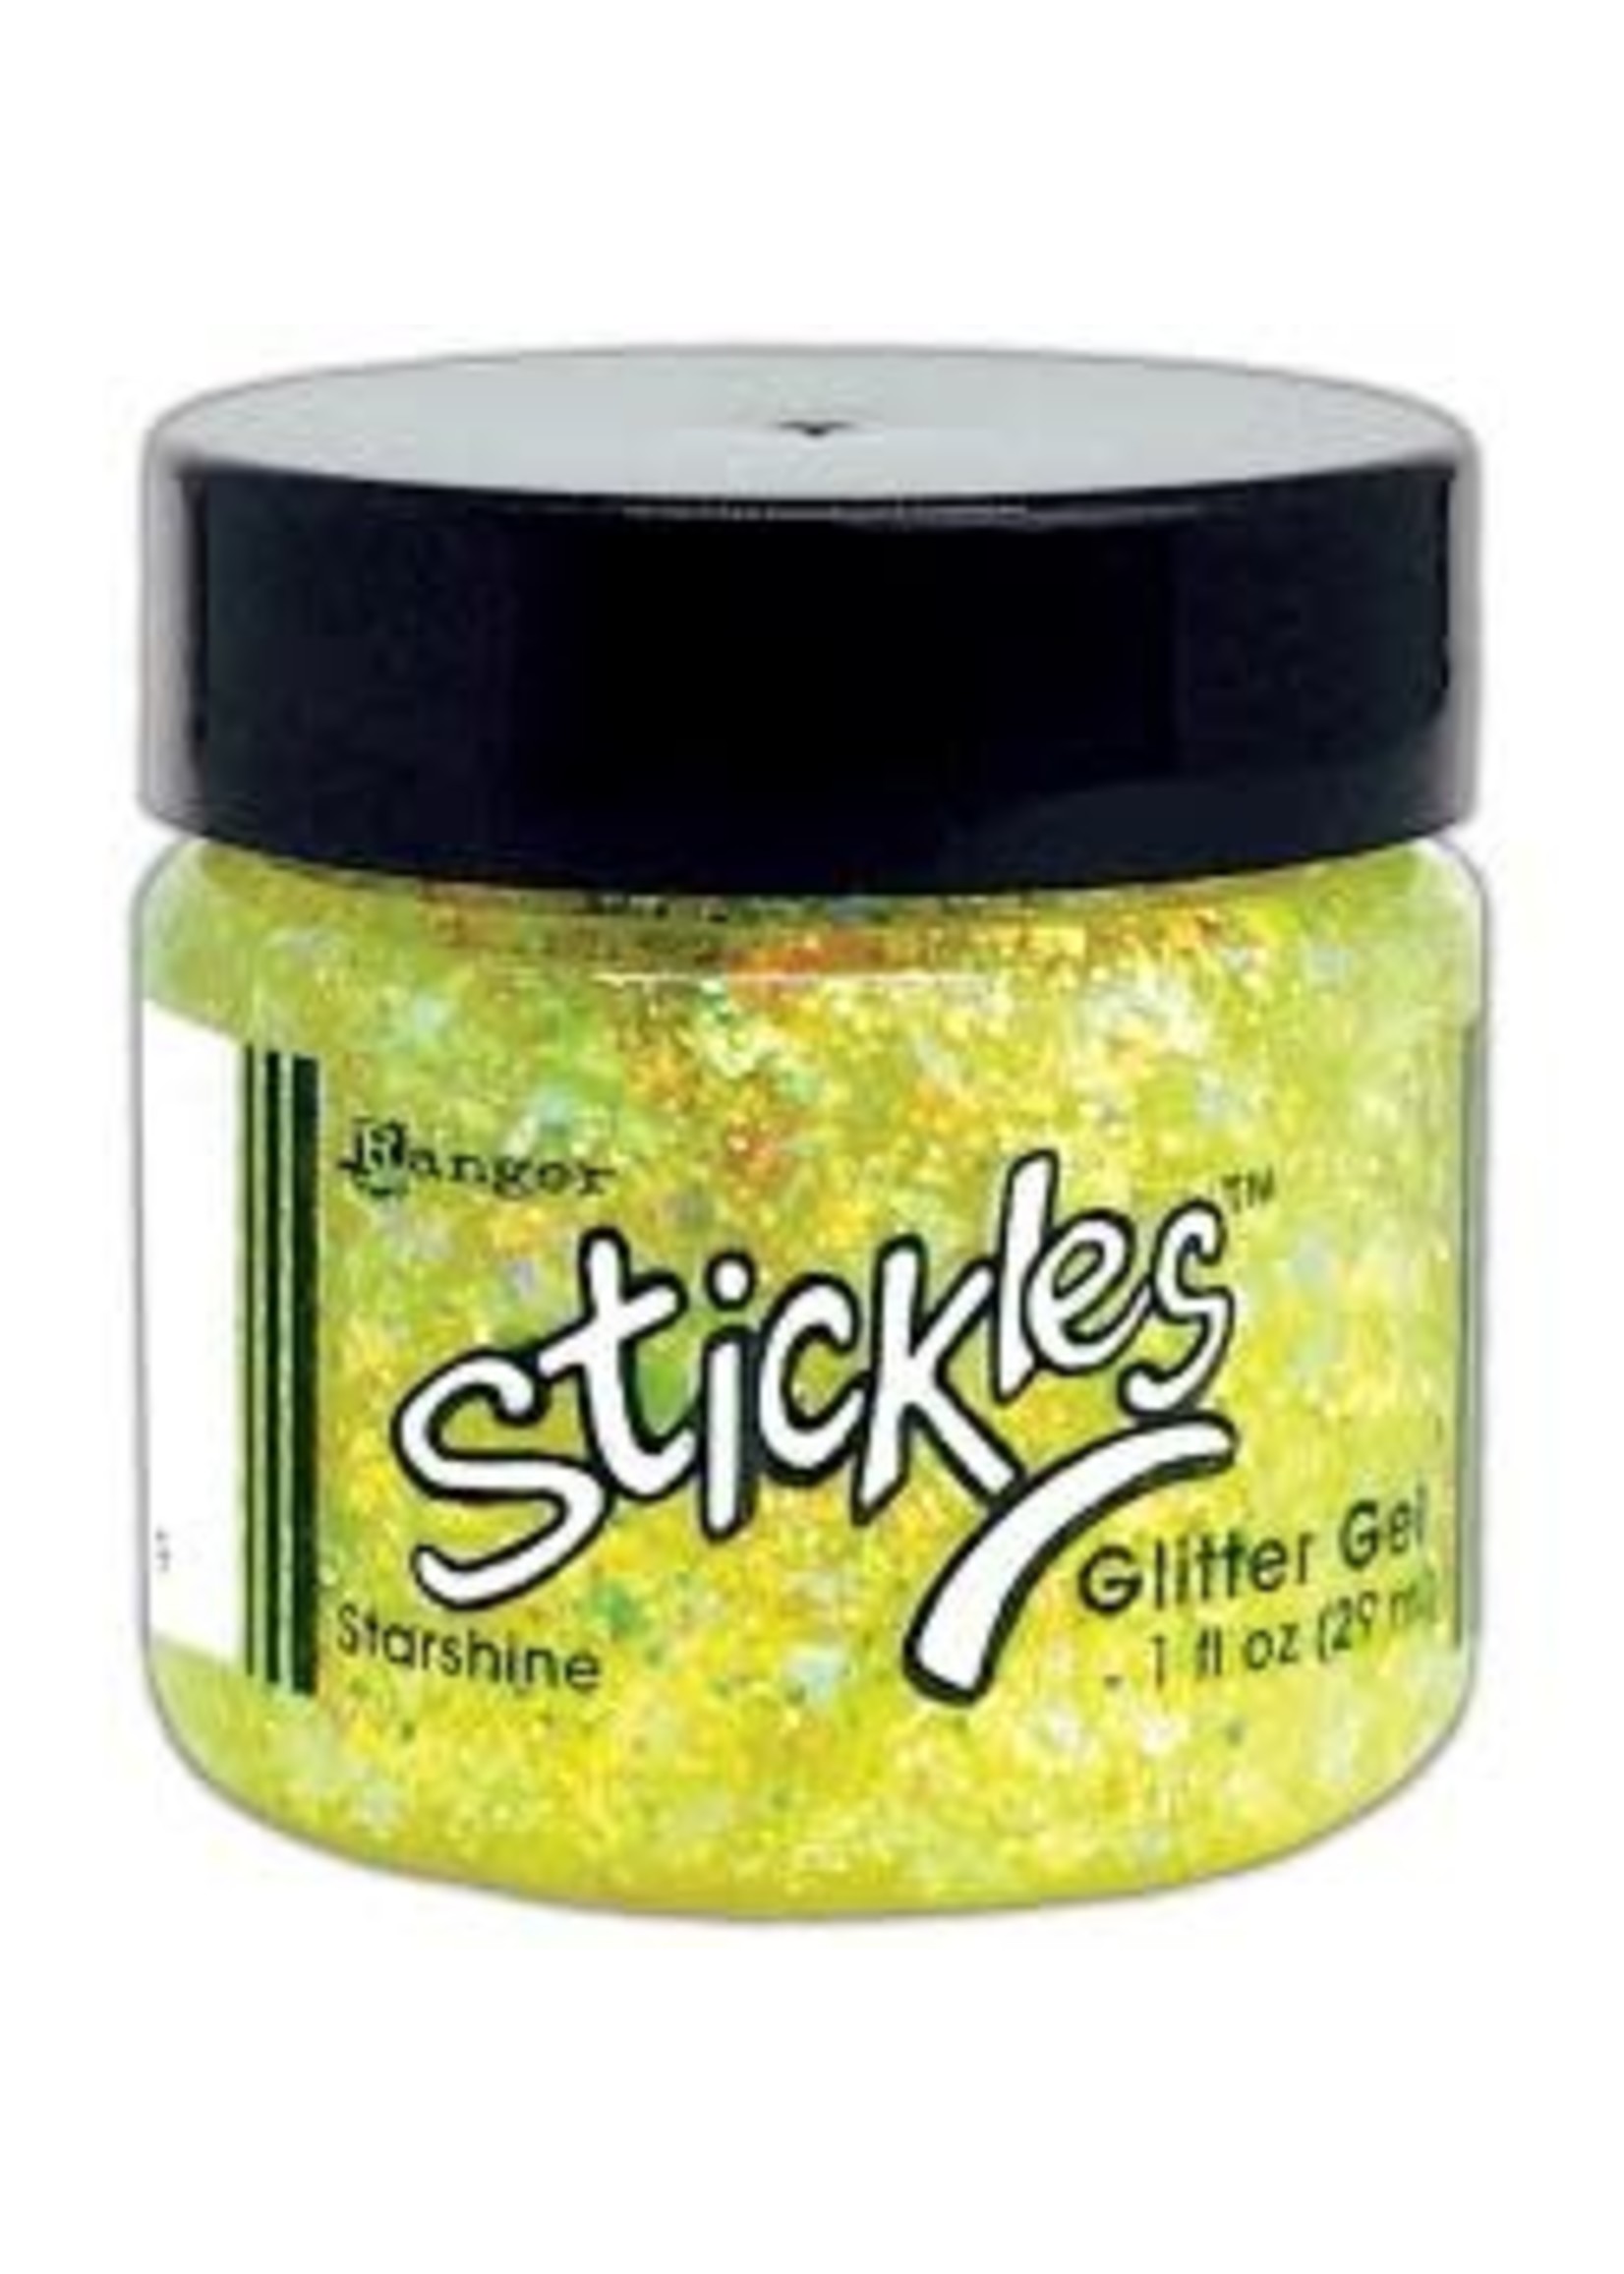 RANGER Stickles Glitter Gel Starshine